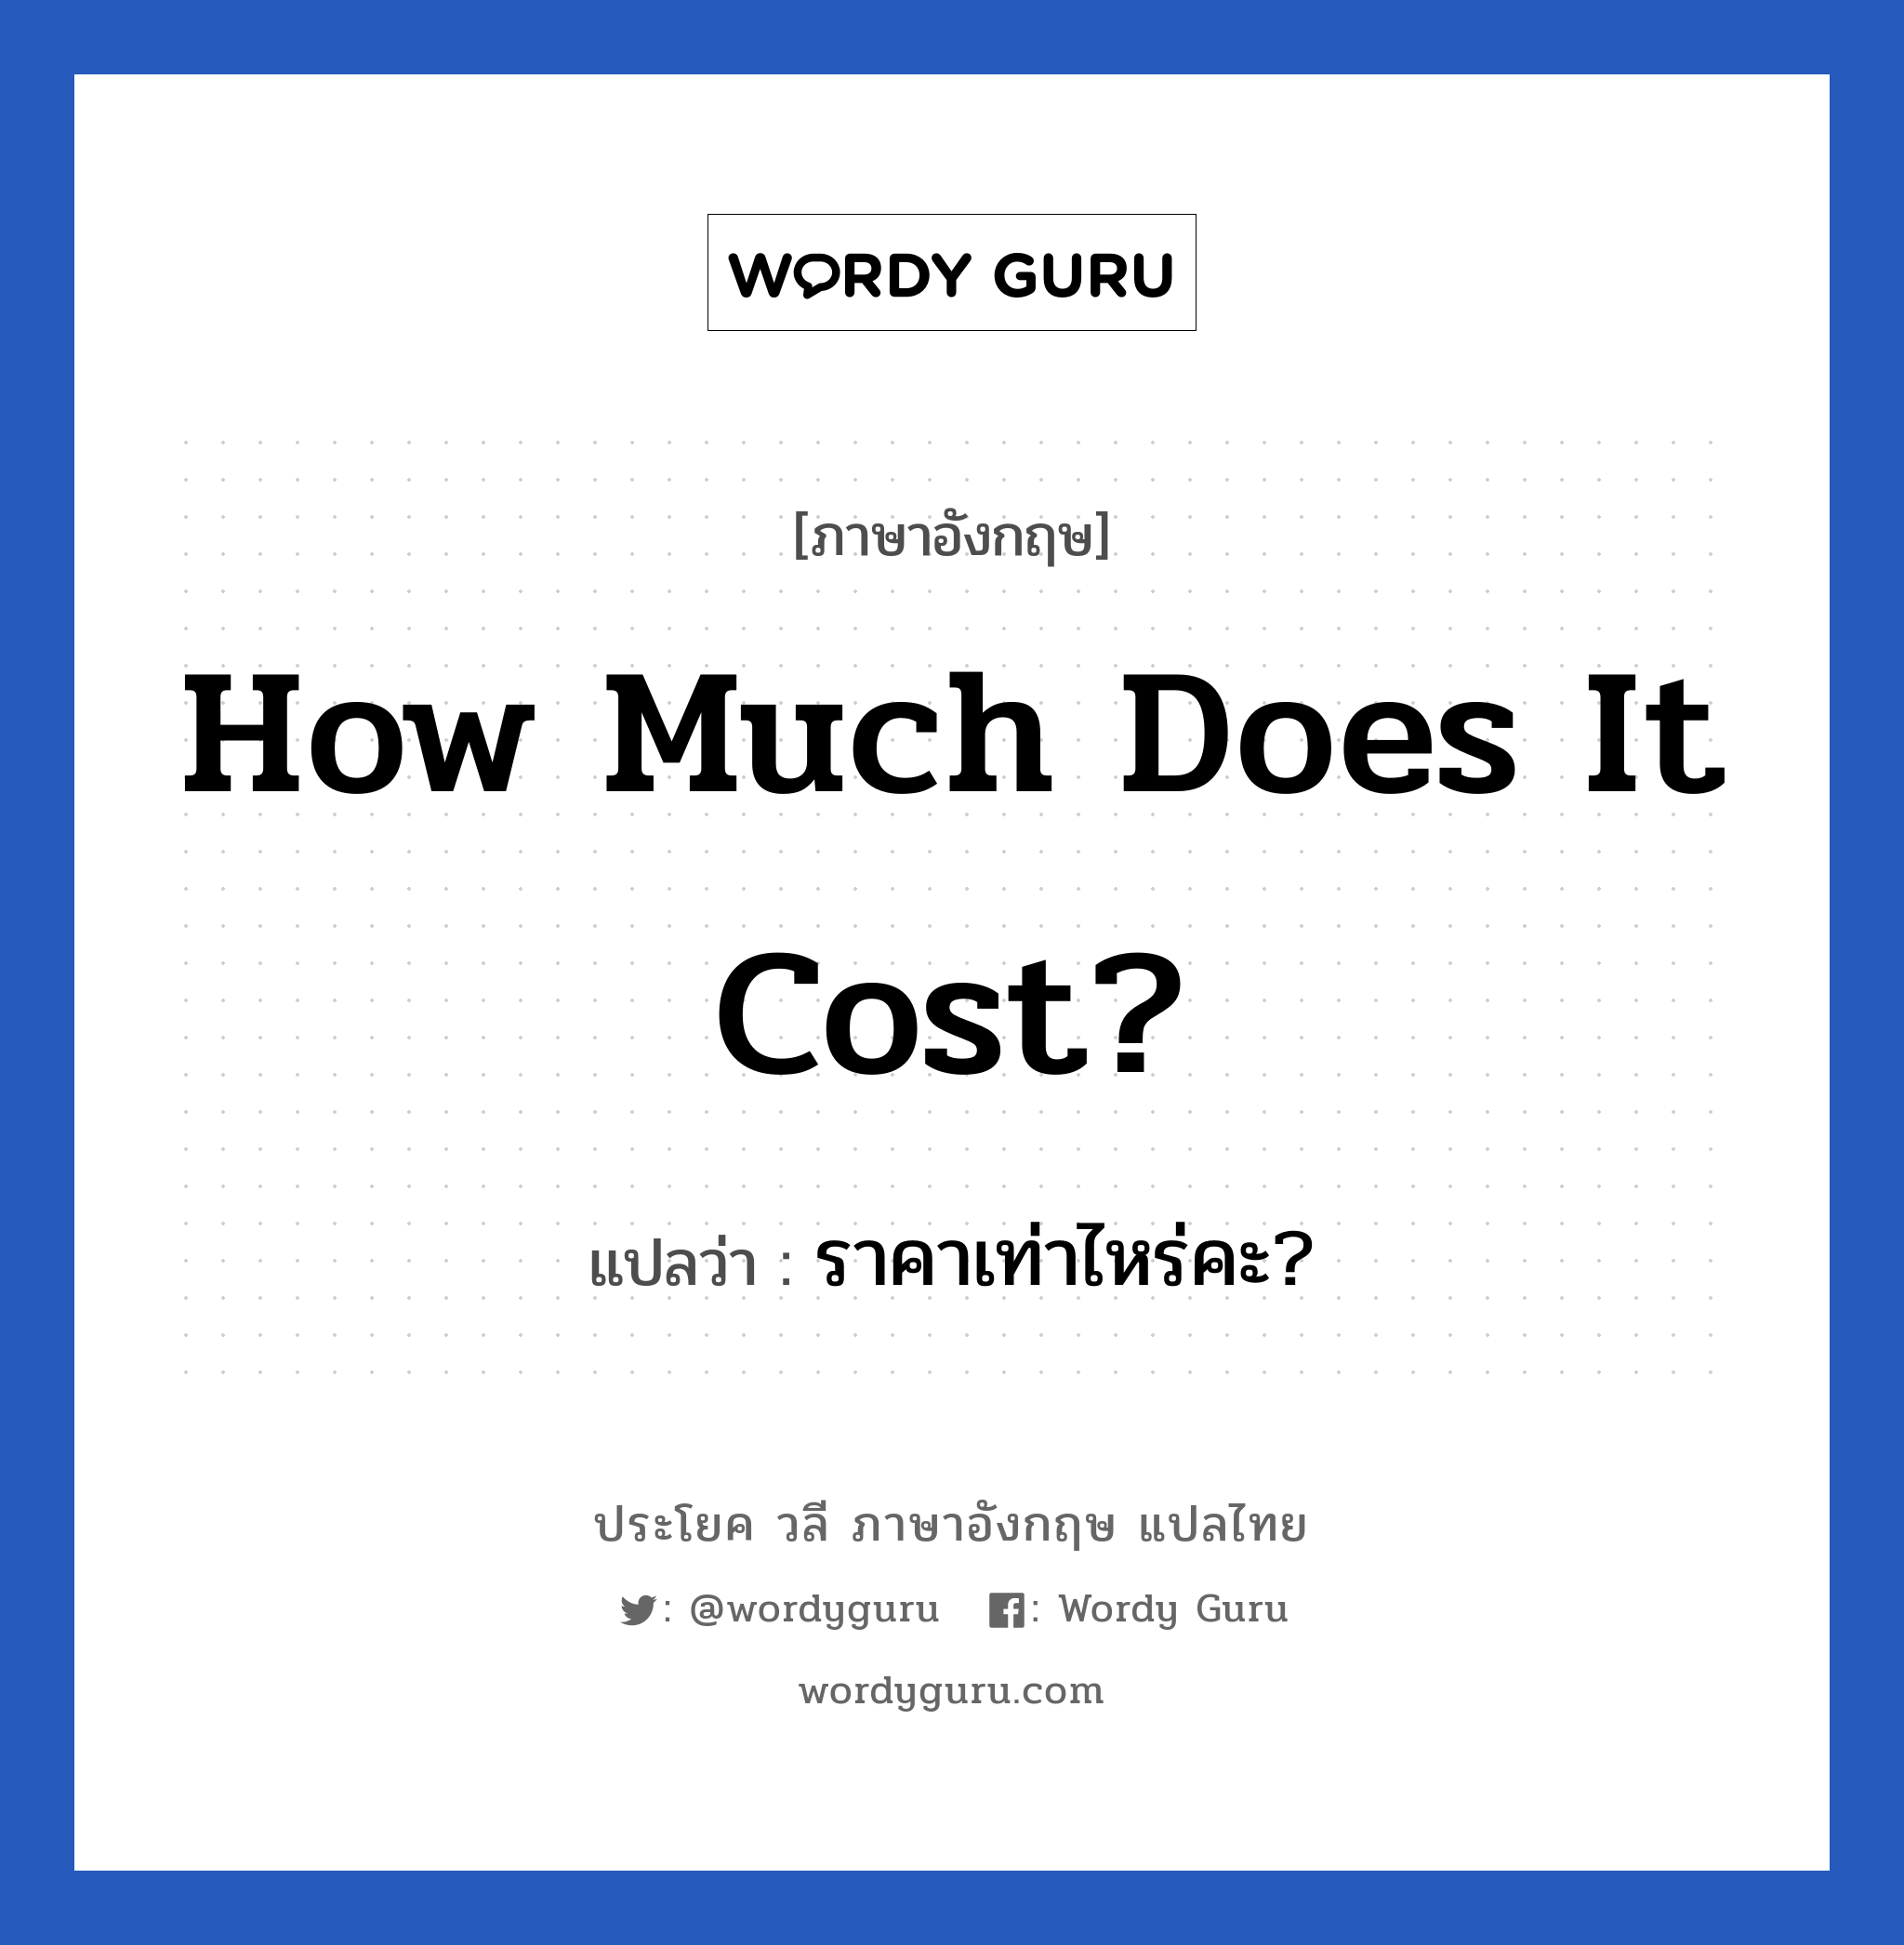 How much does it cost? แปลว่า?, วลีภาษาอังกฤษ How much does it cost? แปลว่า ราคาเท่าไหร่คะ?